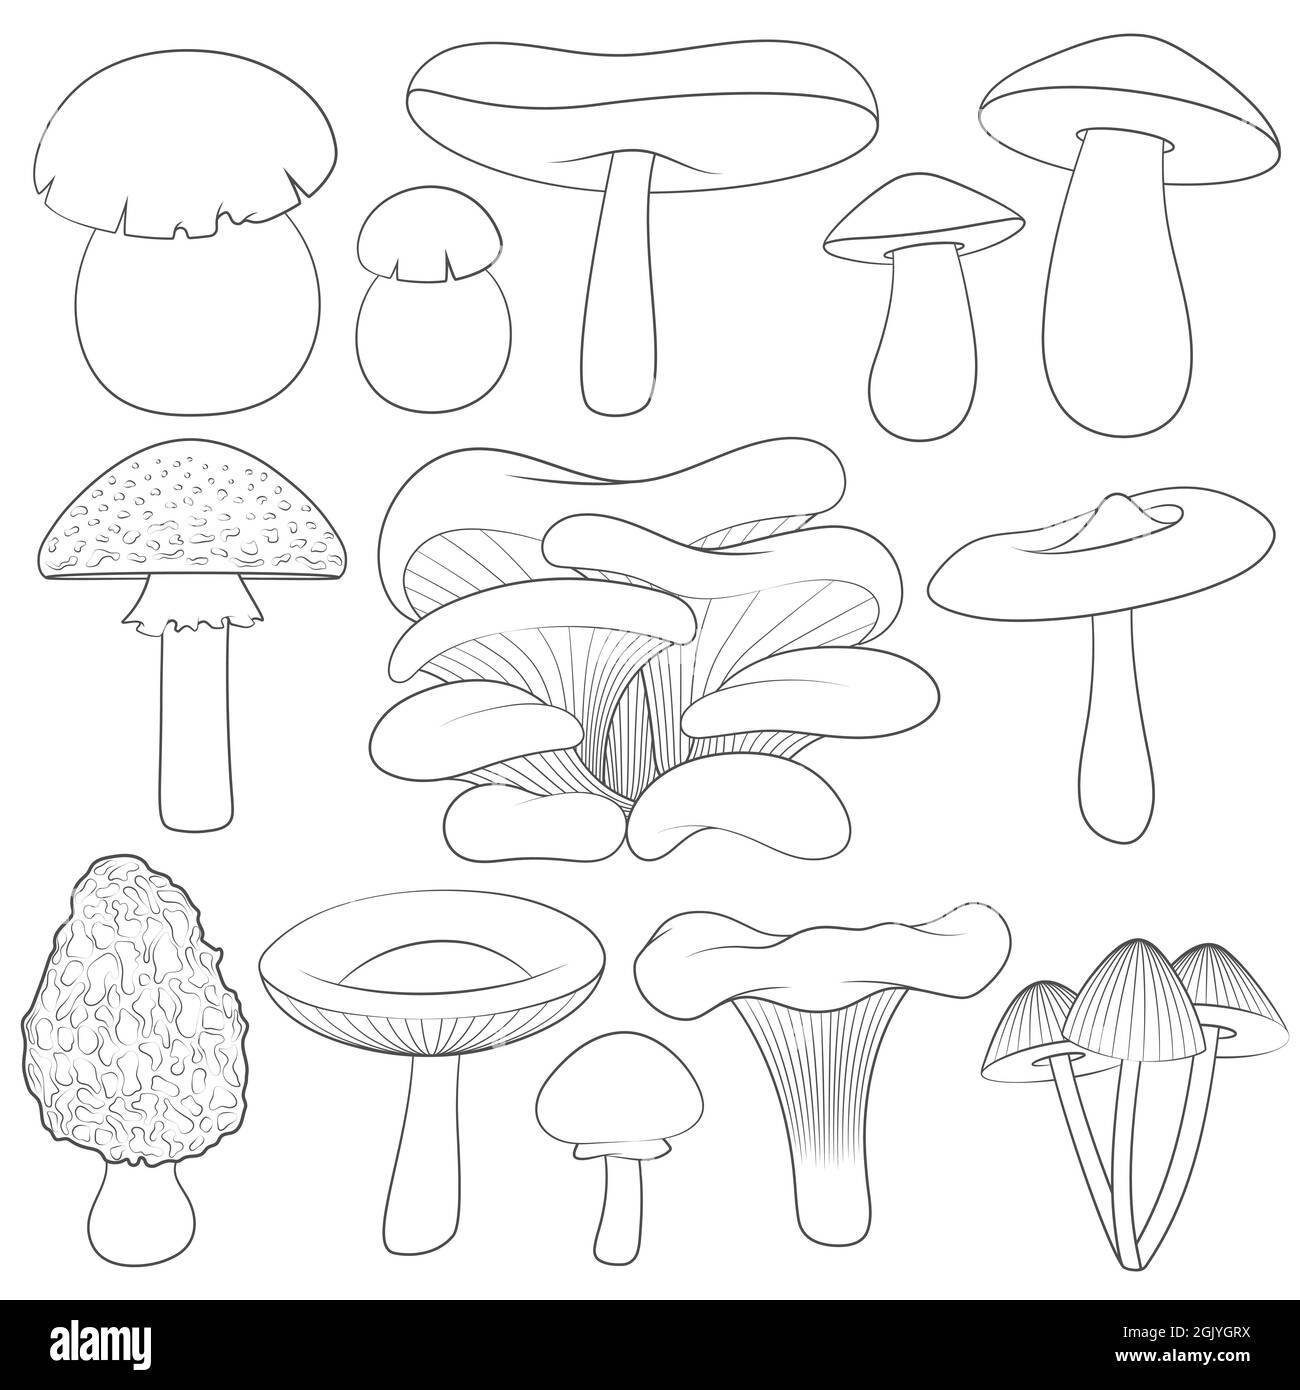 Set von Schwarz-Weiß-Bildern mit Pilzen. Isolierte Vektorobjekte auf weißem Hintergrund. Stock Vektor